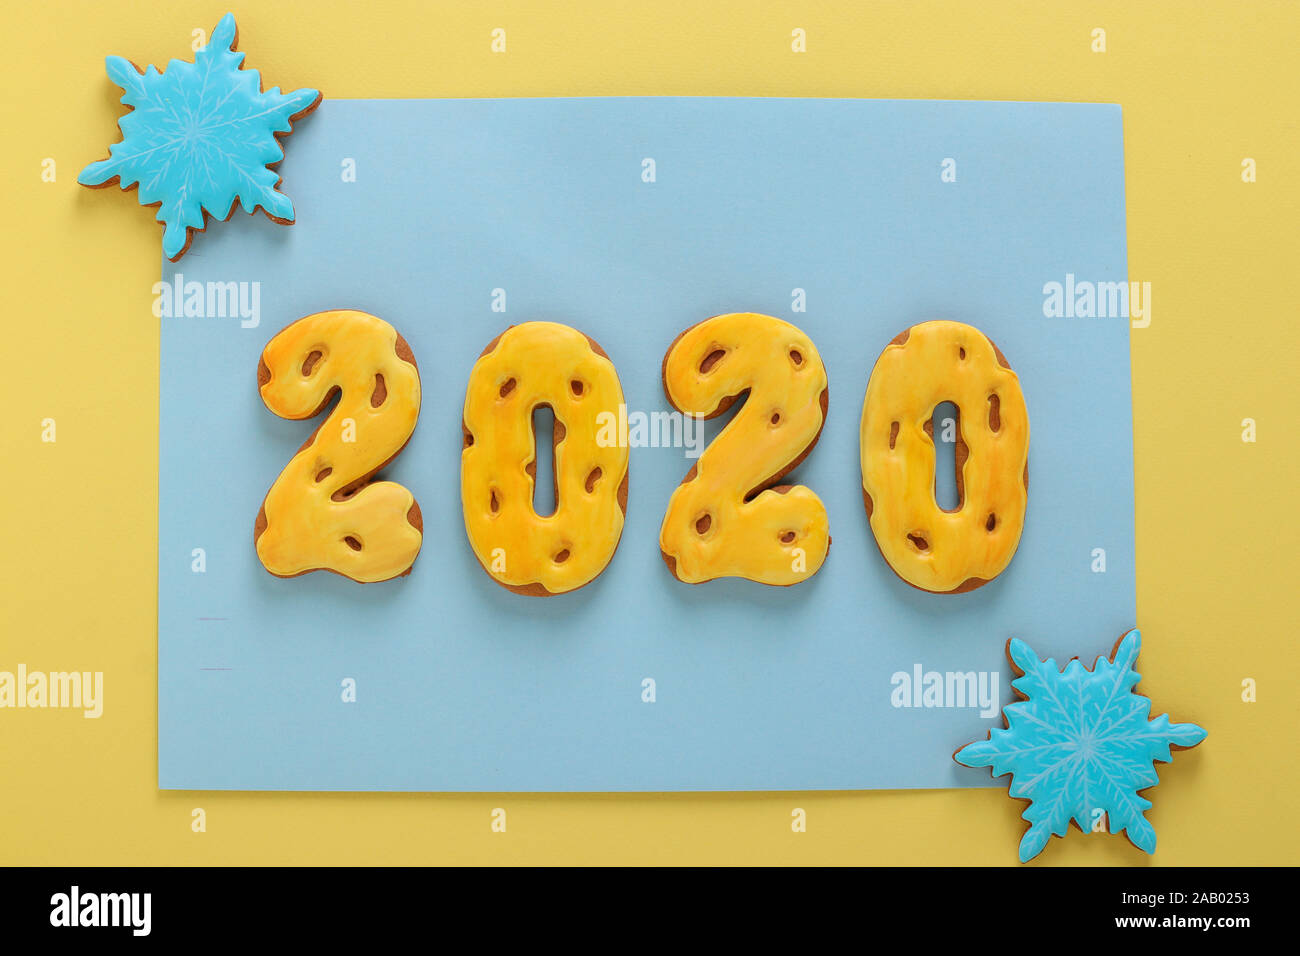 Gingerbread cookies sous forme de chiffres 2020, cadeaux de Noël ou de vacances Noel, bonne année, fond bleu Banque D'Images